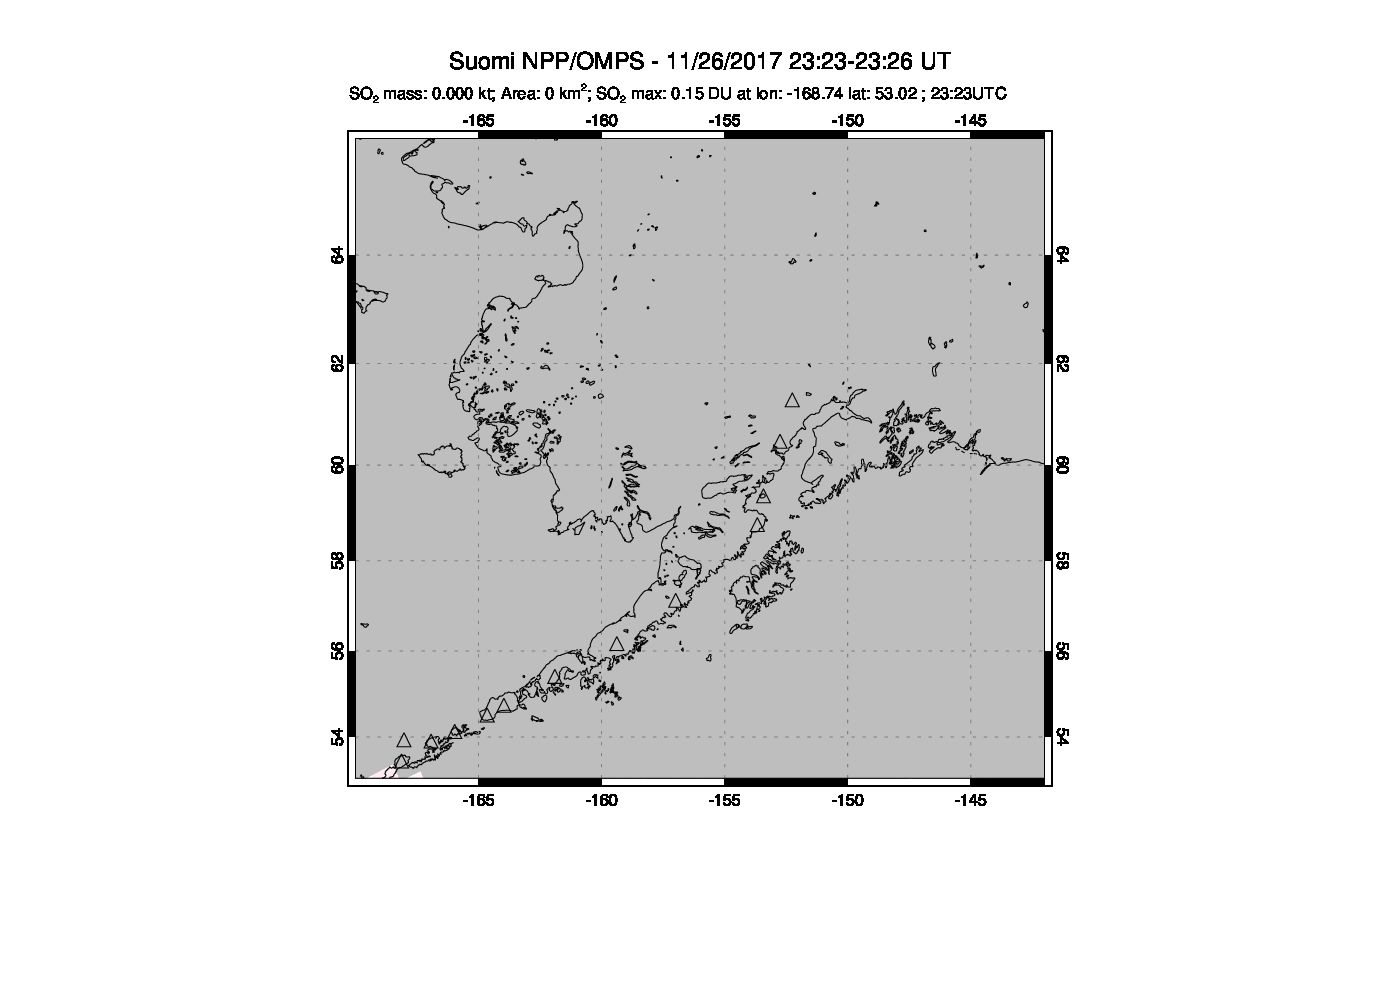 A sulfur dioxide image over Alaska, USA on Nov 26, 2017.